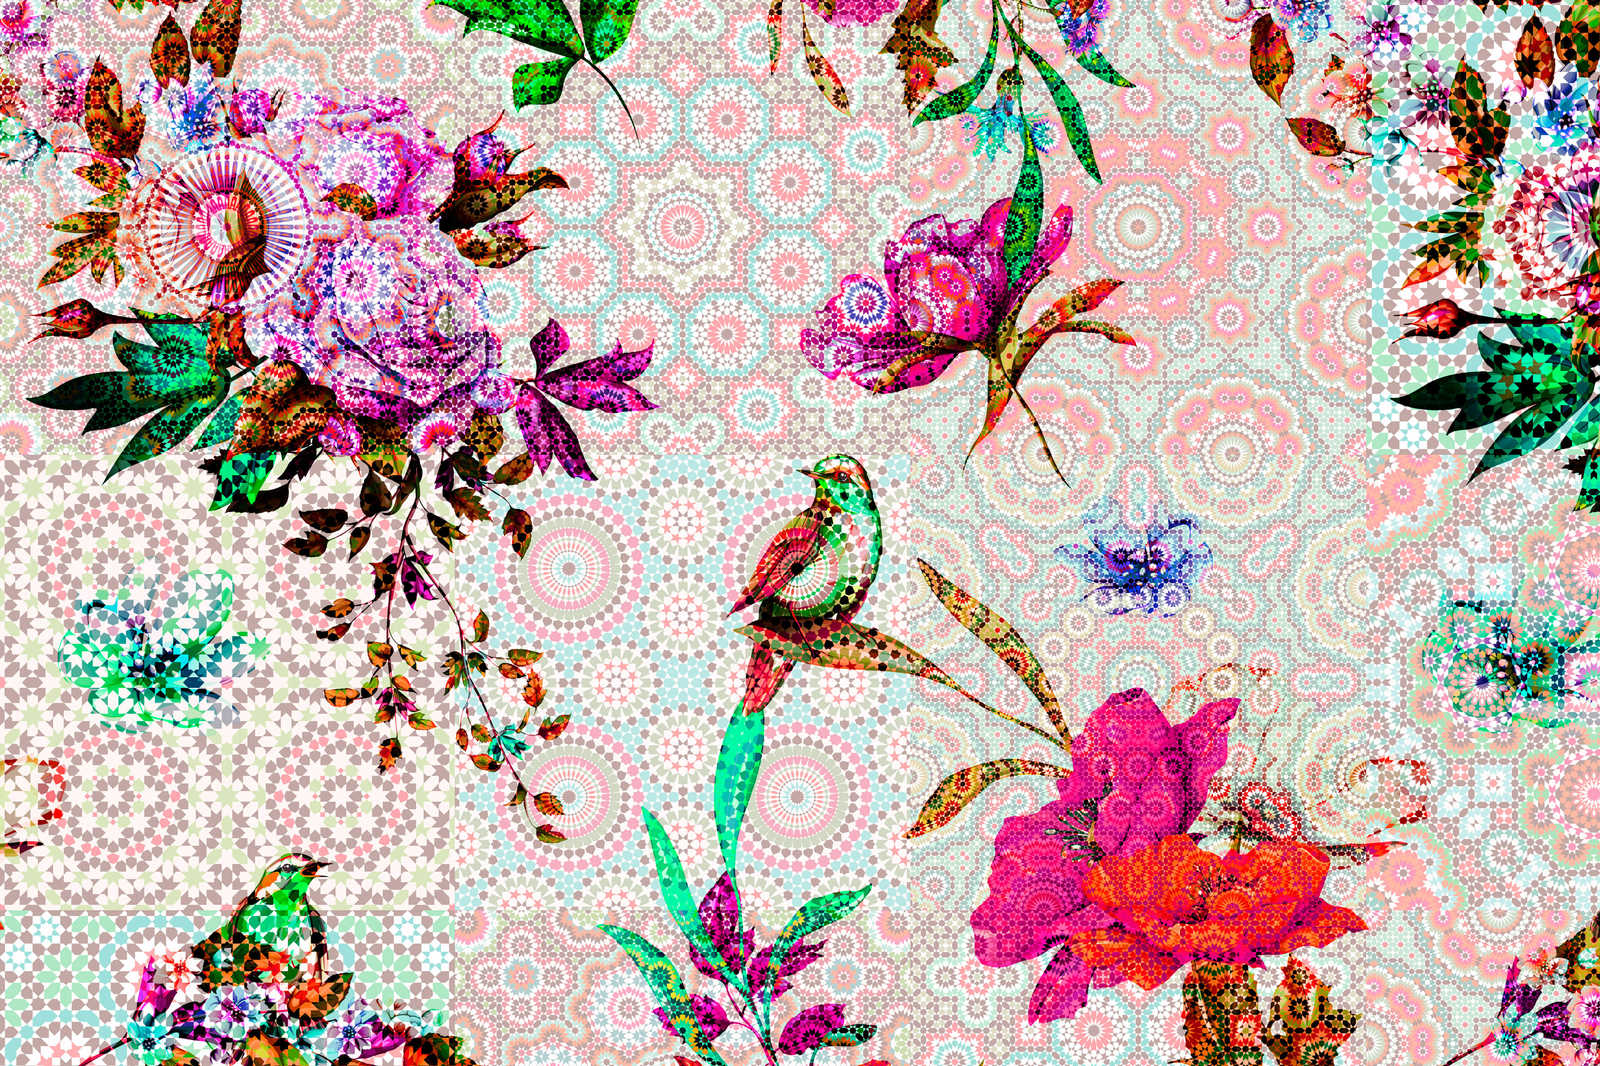             Lienzo de diseño Pintura Mosaico Floral - 0,90 m x 0,60 m
        